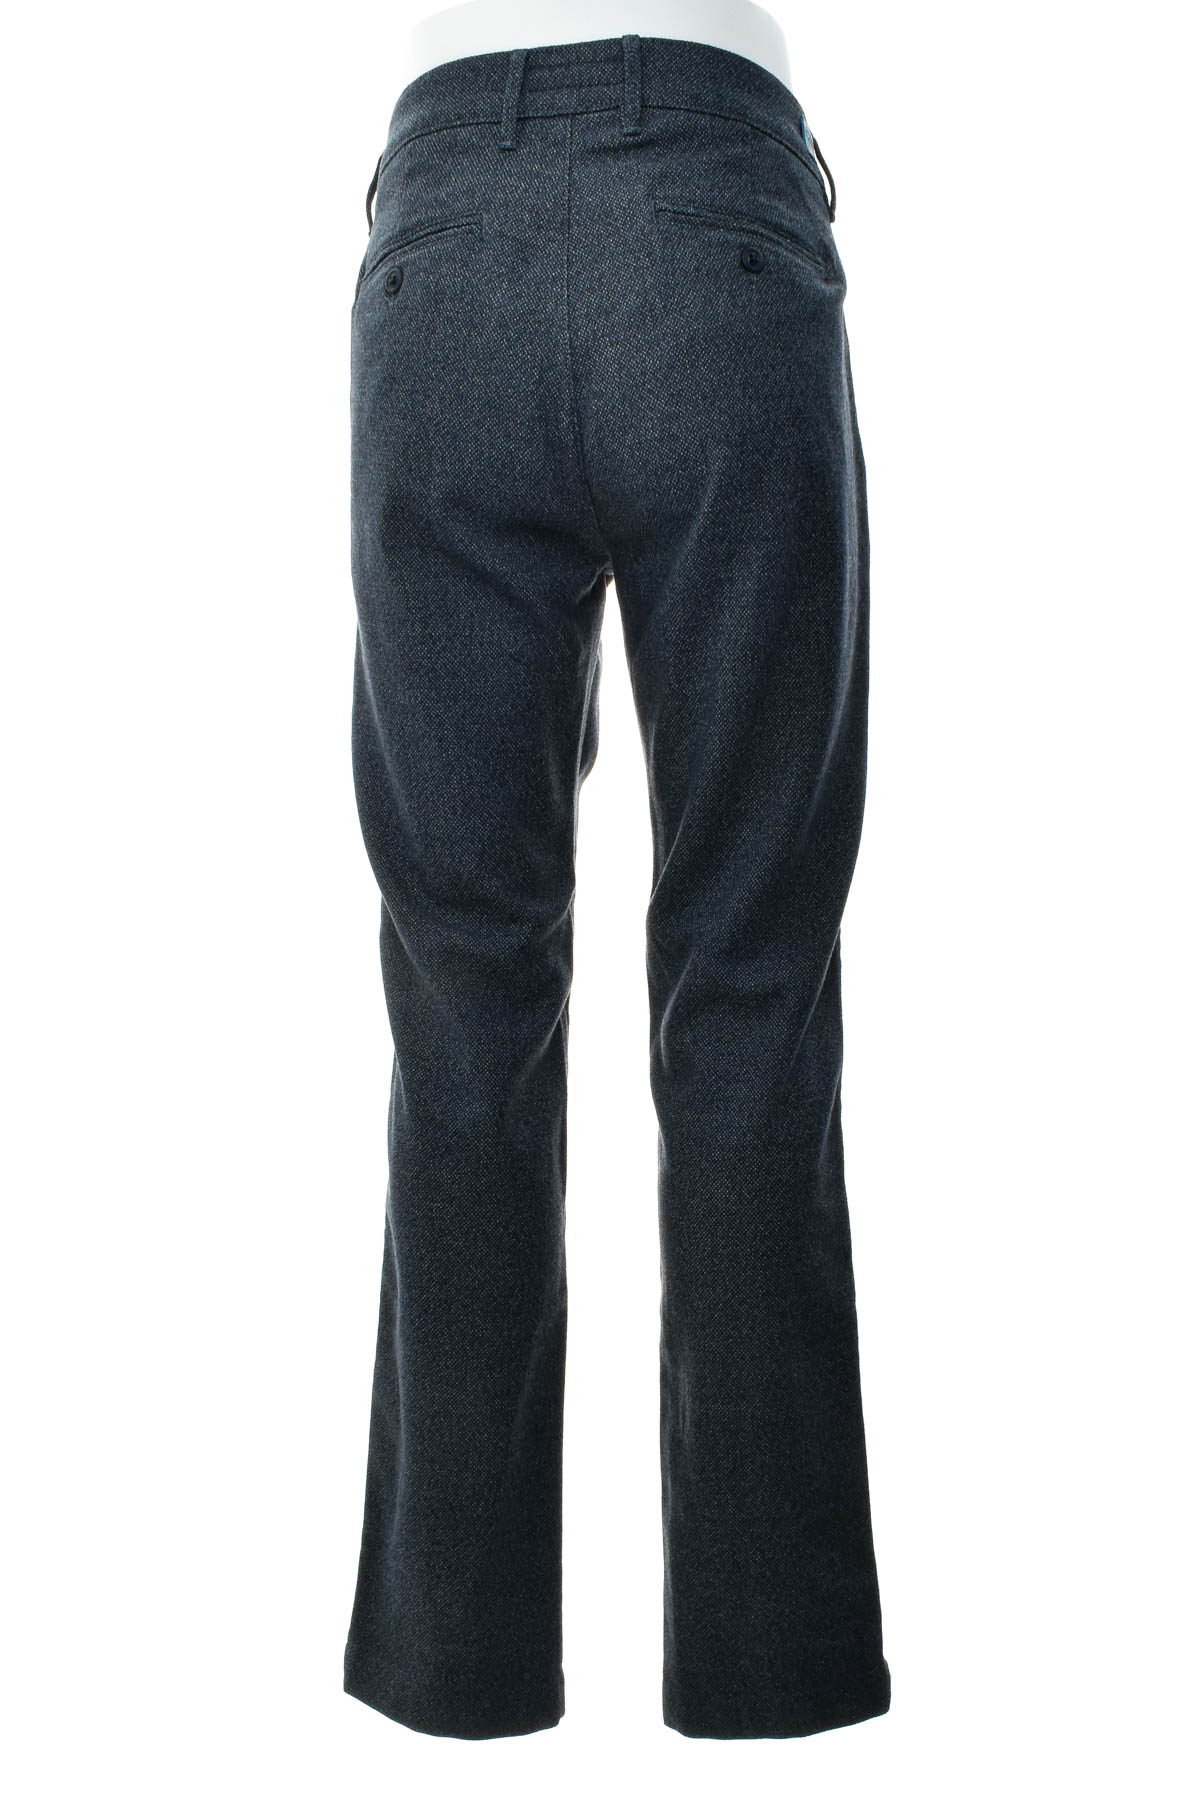 Ανδρικά παντελόνια - Birmingham Wear - 1